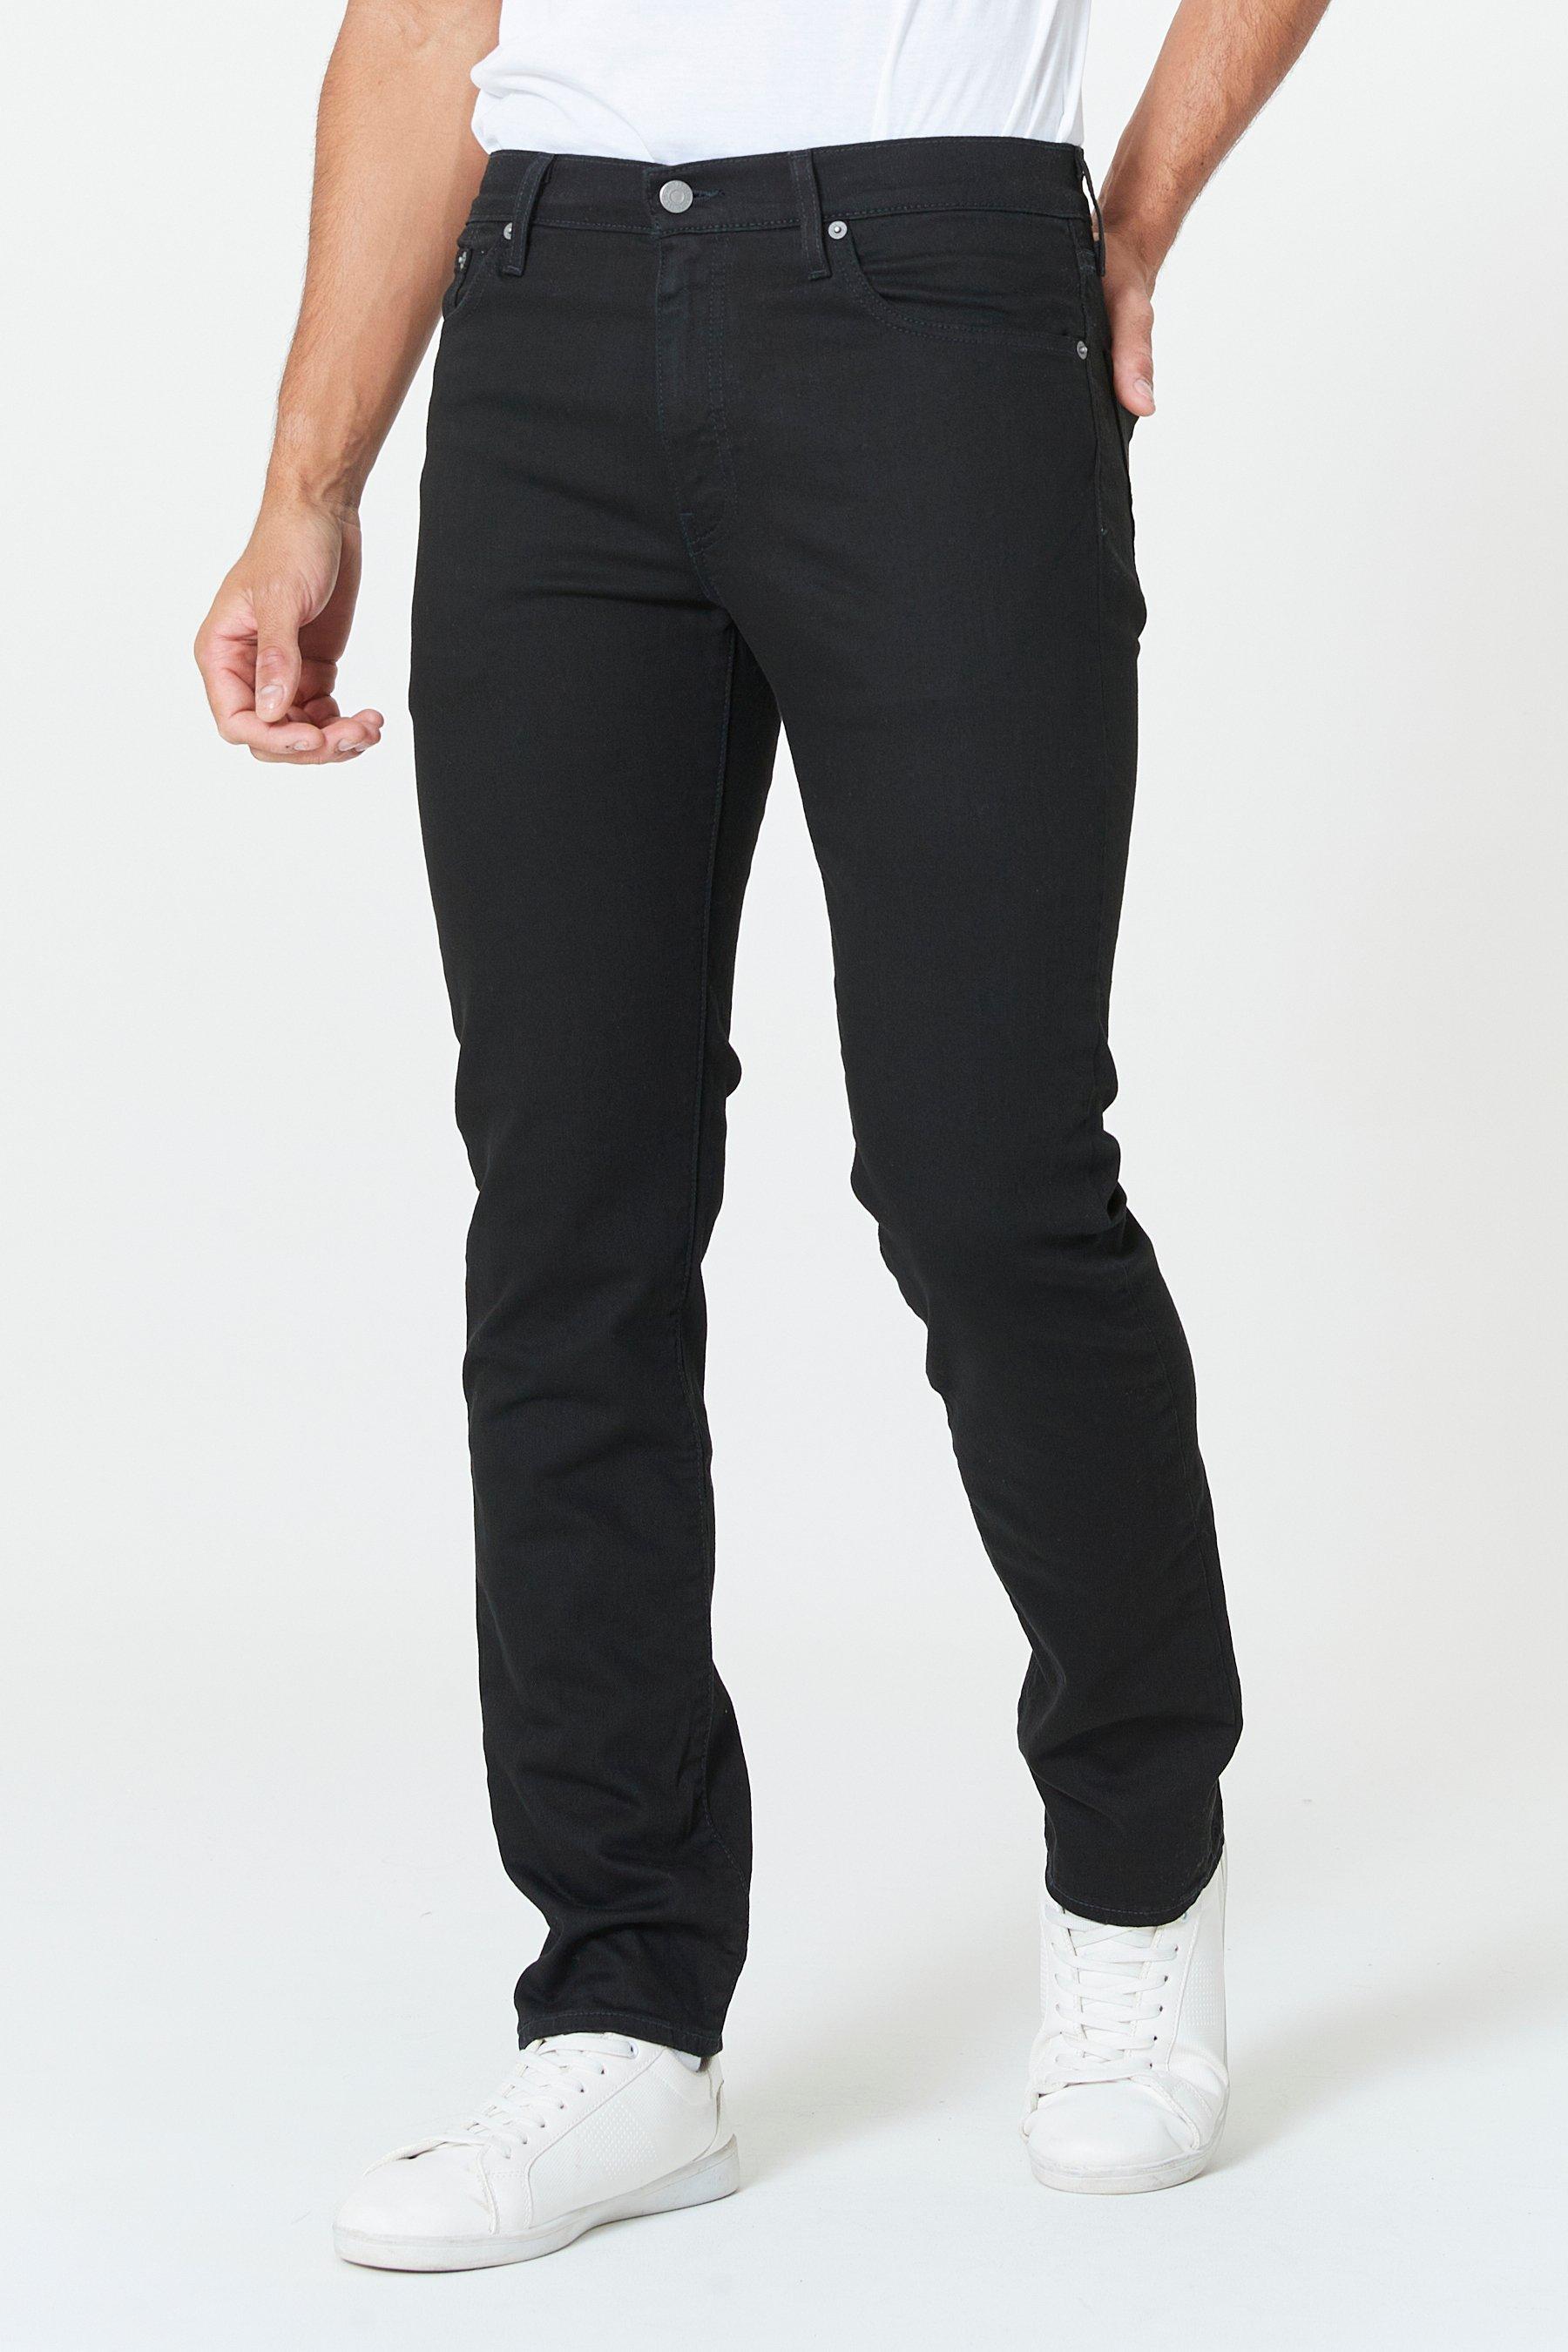 levis 511 slim fit black jeans - mens - size: 30 waist 30 leg